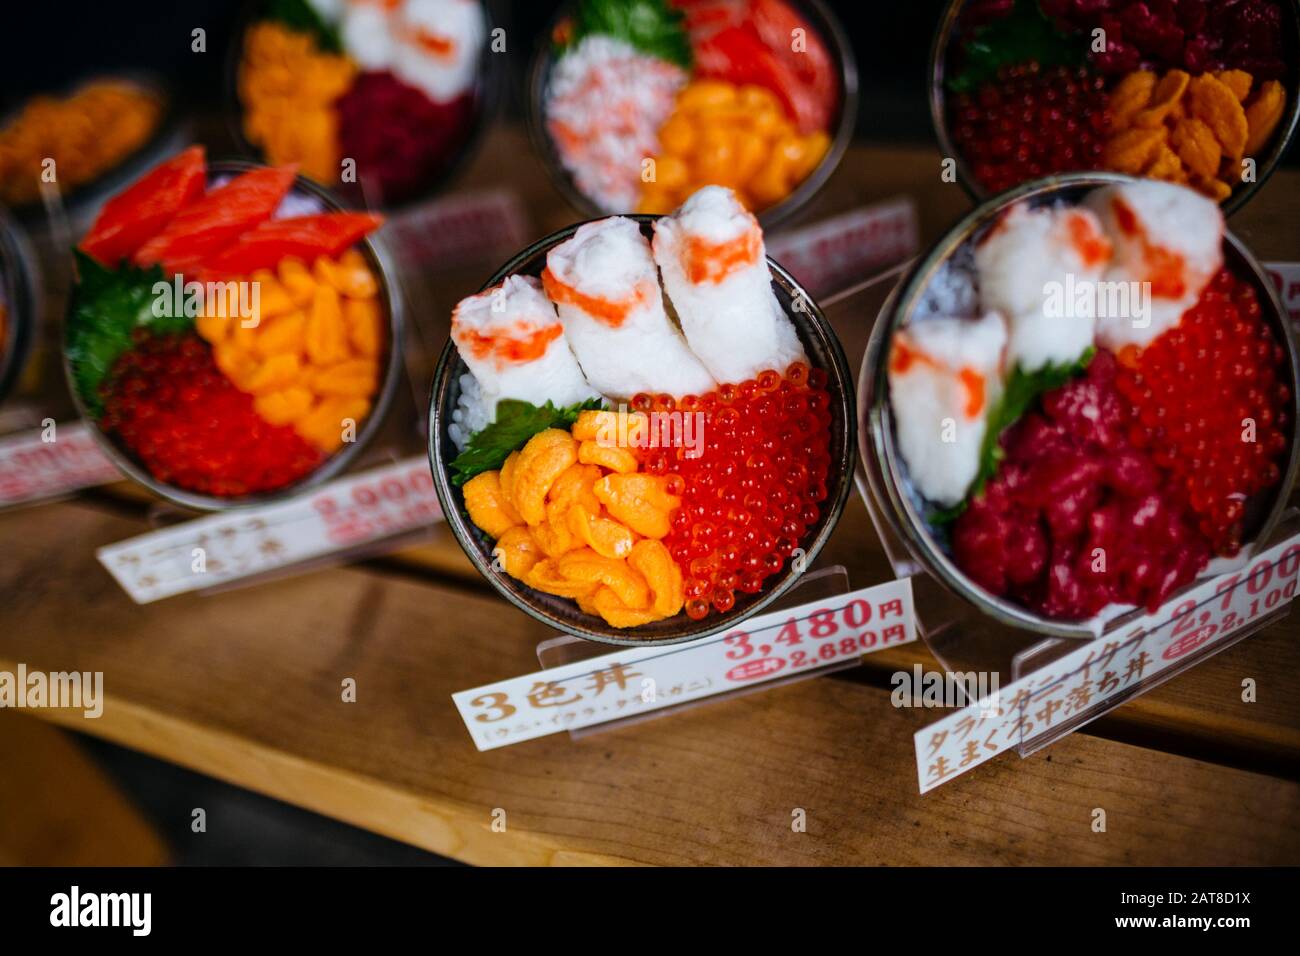 Große Nähe zu Plastikschüsseln japanischer Speisen, die außerhalb eines Restaurants ausgestellt werden. Stockfoto